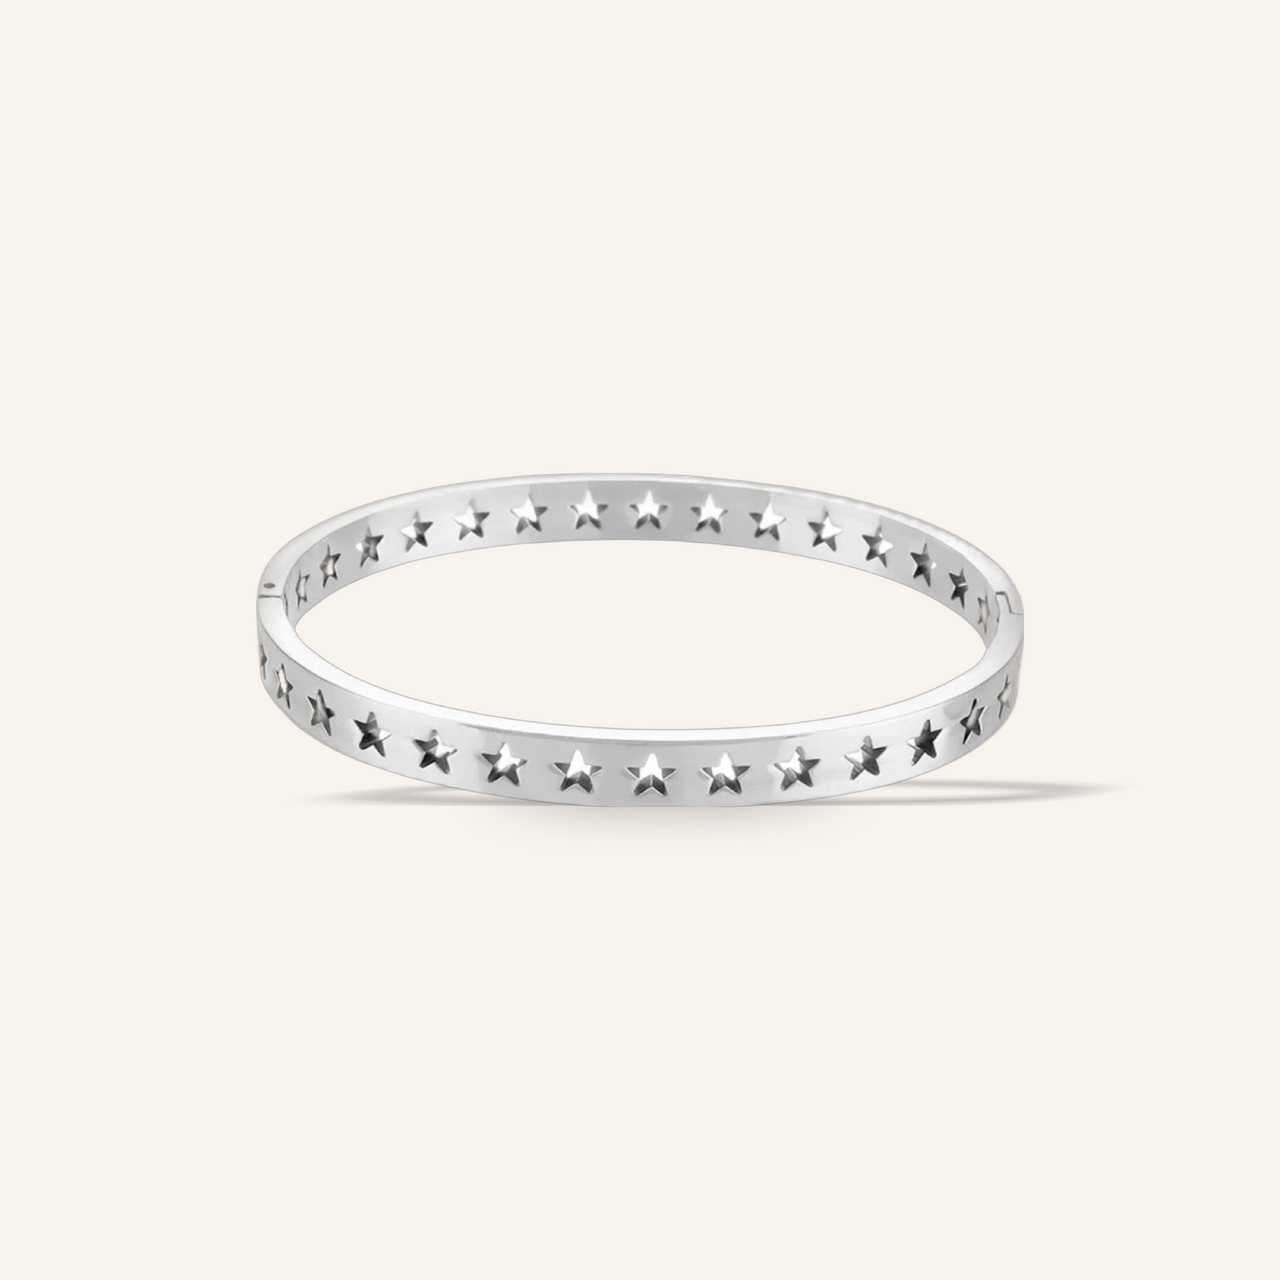 Multi star silver bracelet